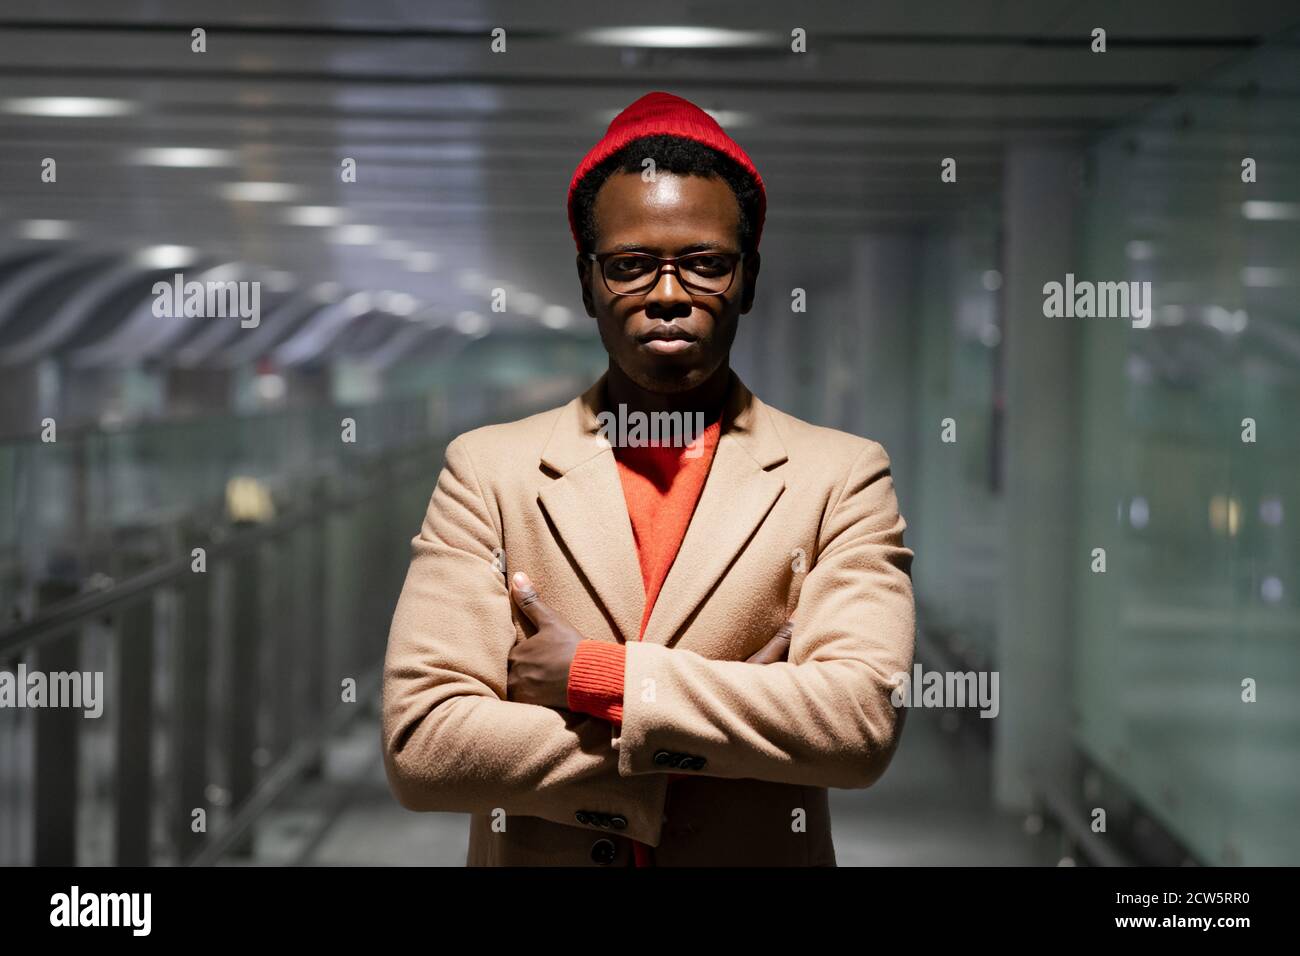 Homme millénaire afro-américain élégant en lunettes porter un manteau beige, un chandail rouge et un chapeau, debout dans le hall de l'aéroport, regardant la caméra, les bras croisés Banque D'Images